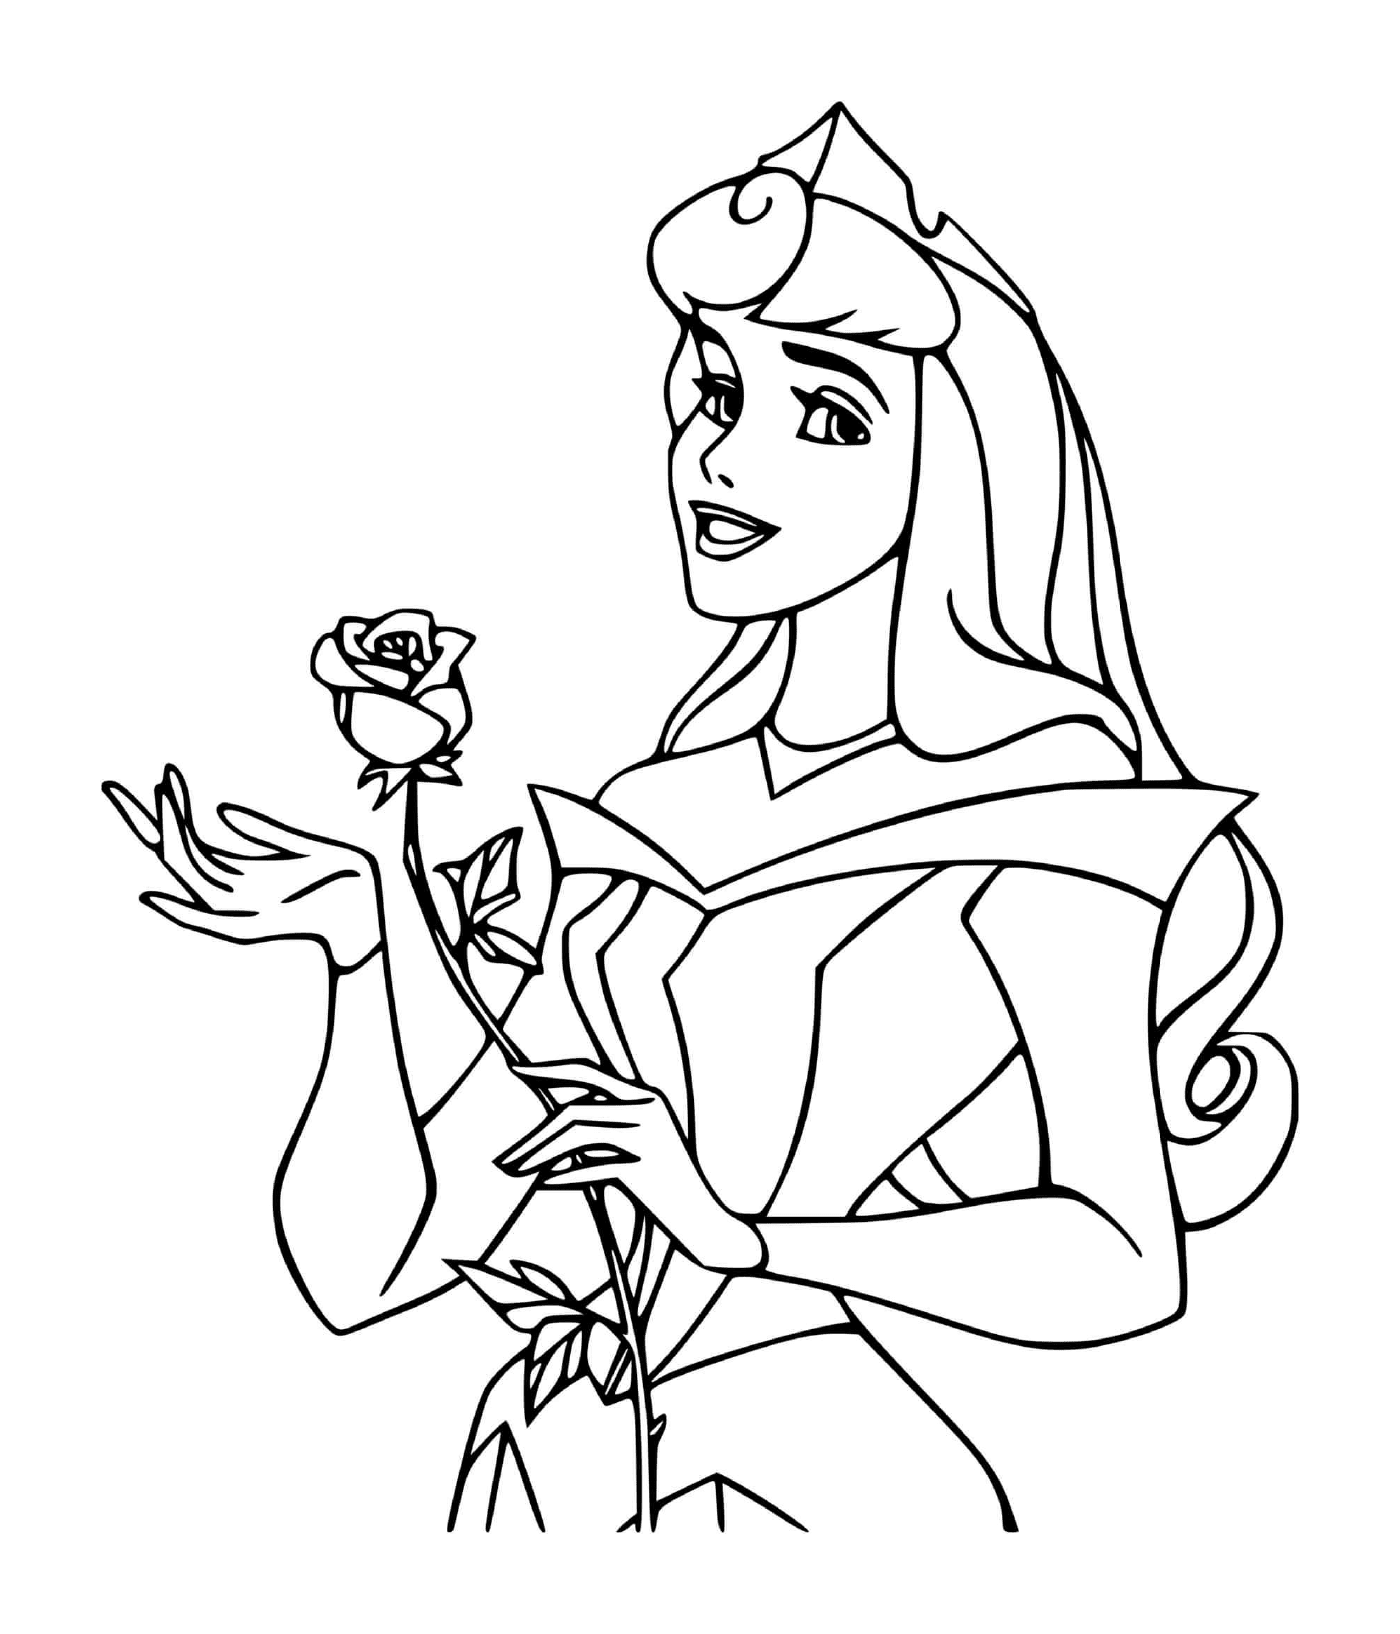   Princesse de La Belle au bois dormant (Disney) avec rose 